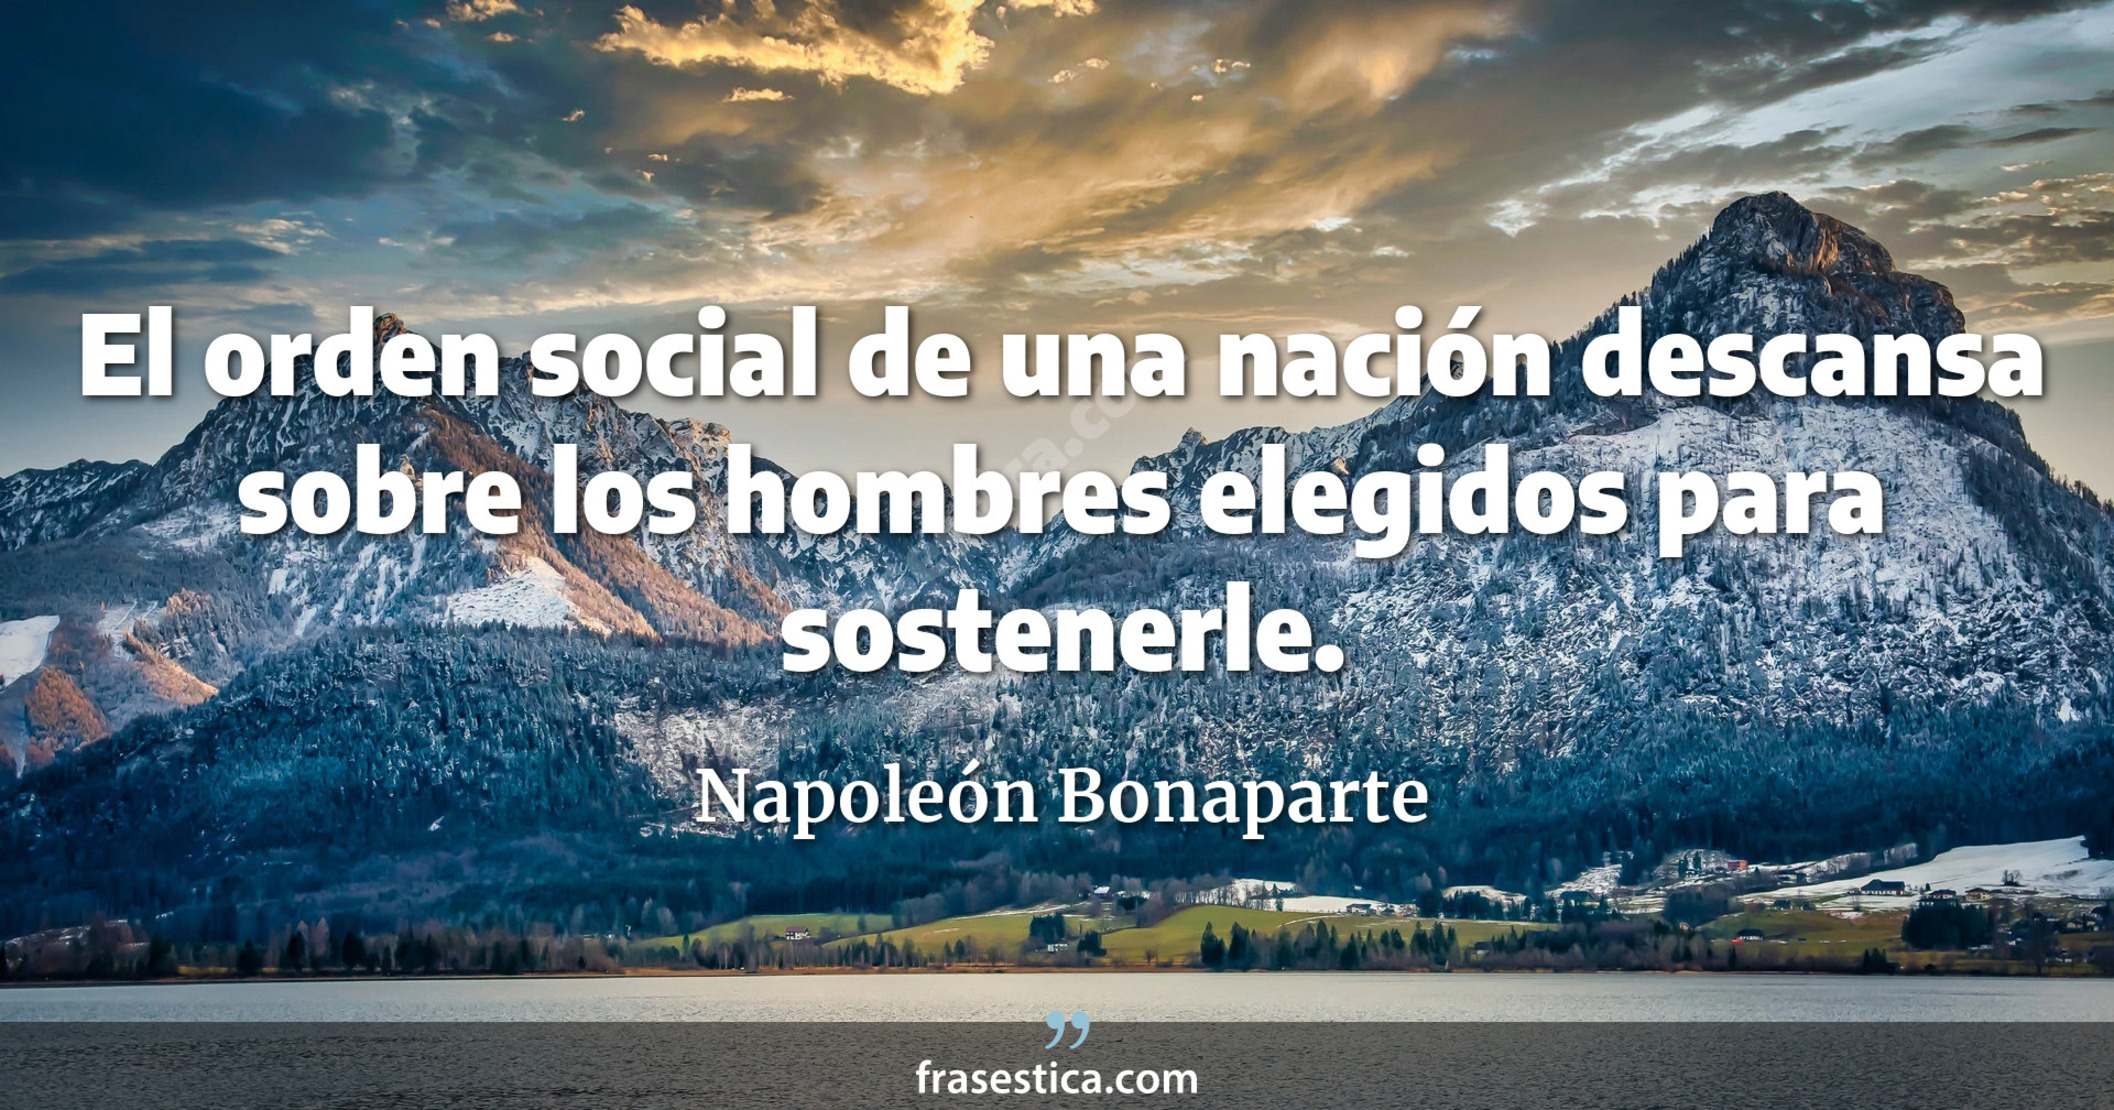 El orden social de una nación descansa sobre los hombres elegidos para sostenerle. - Napoleón Bonaparte